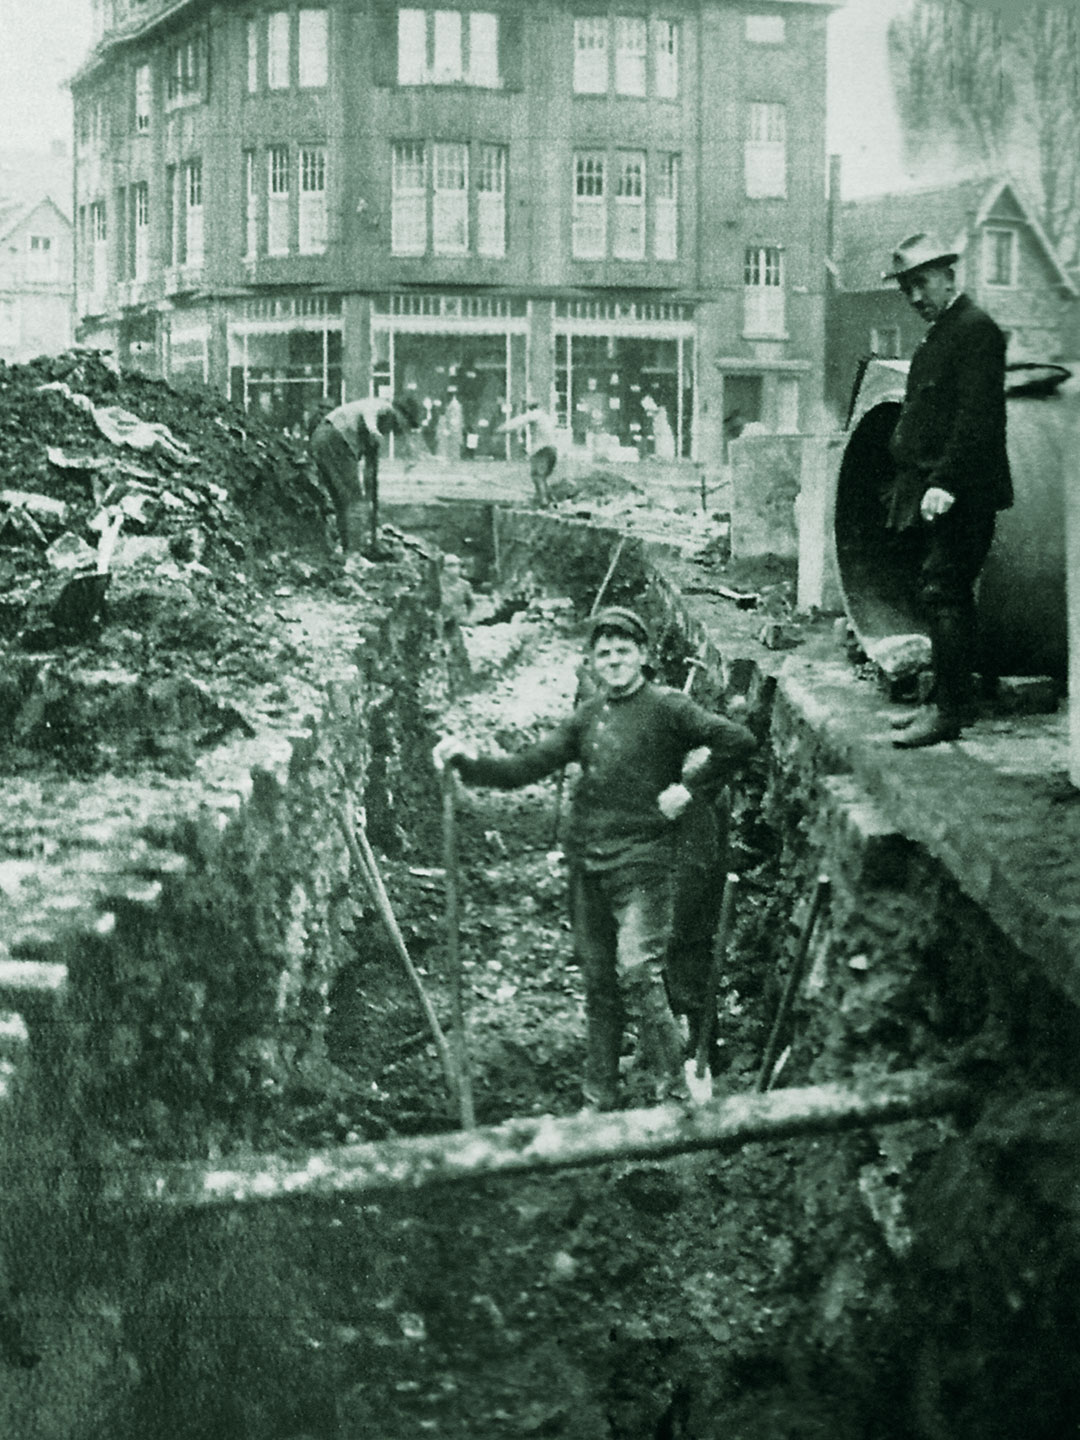  Das Kaufhaus Abraham Heumann ca. 1926 während des Baus der städtischen Kanalisation nach der Typhus-Epidemie